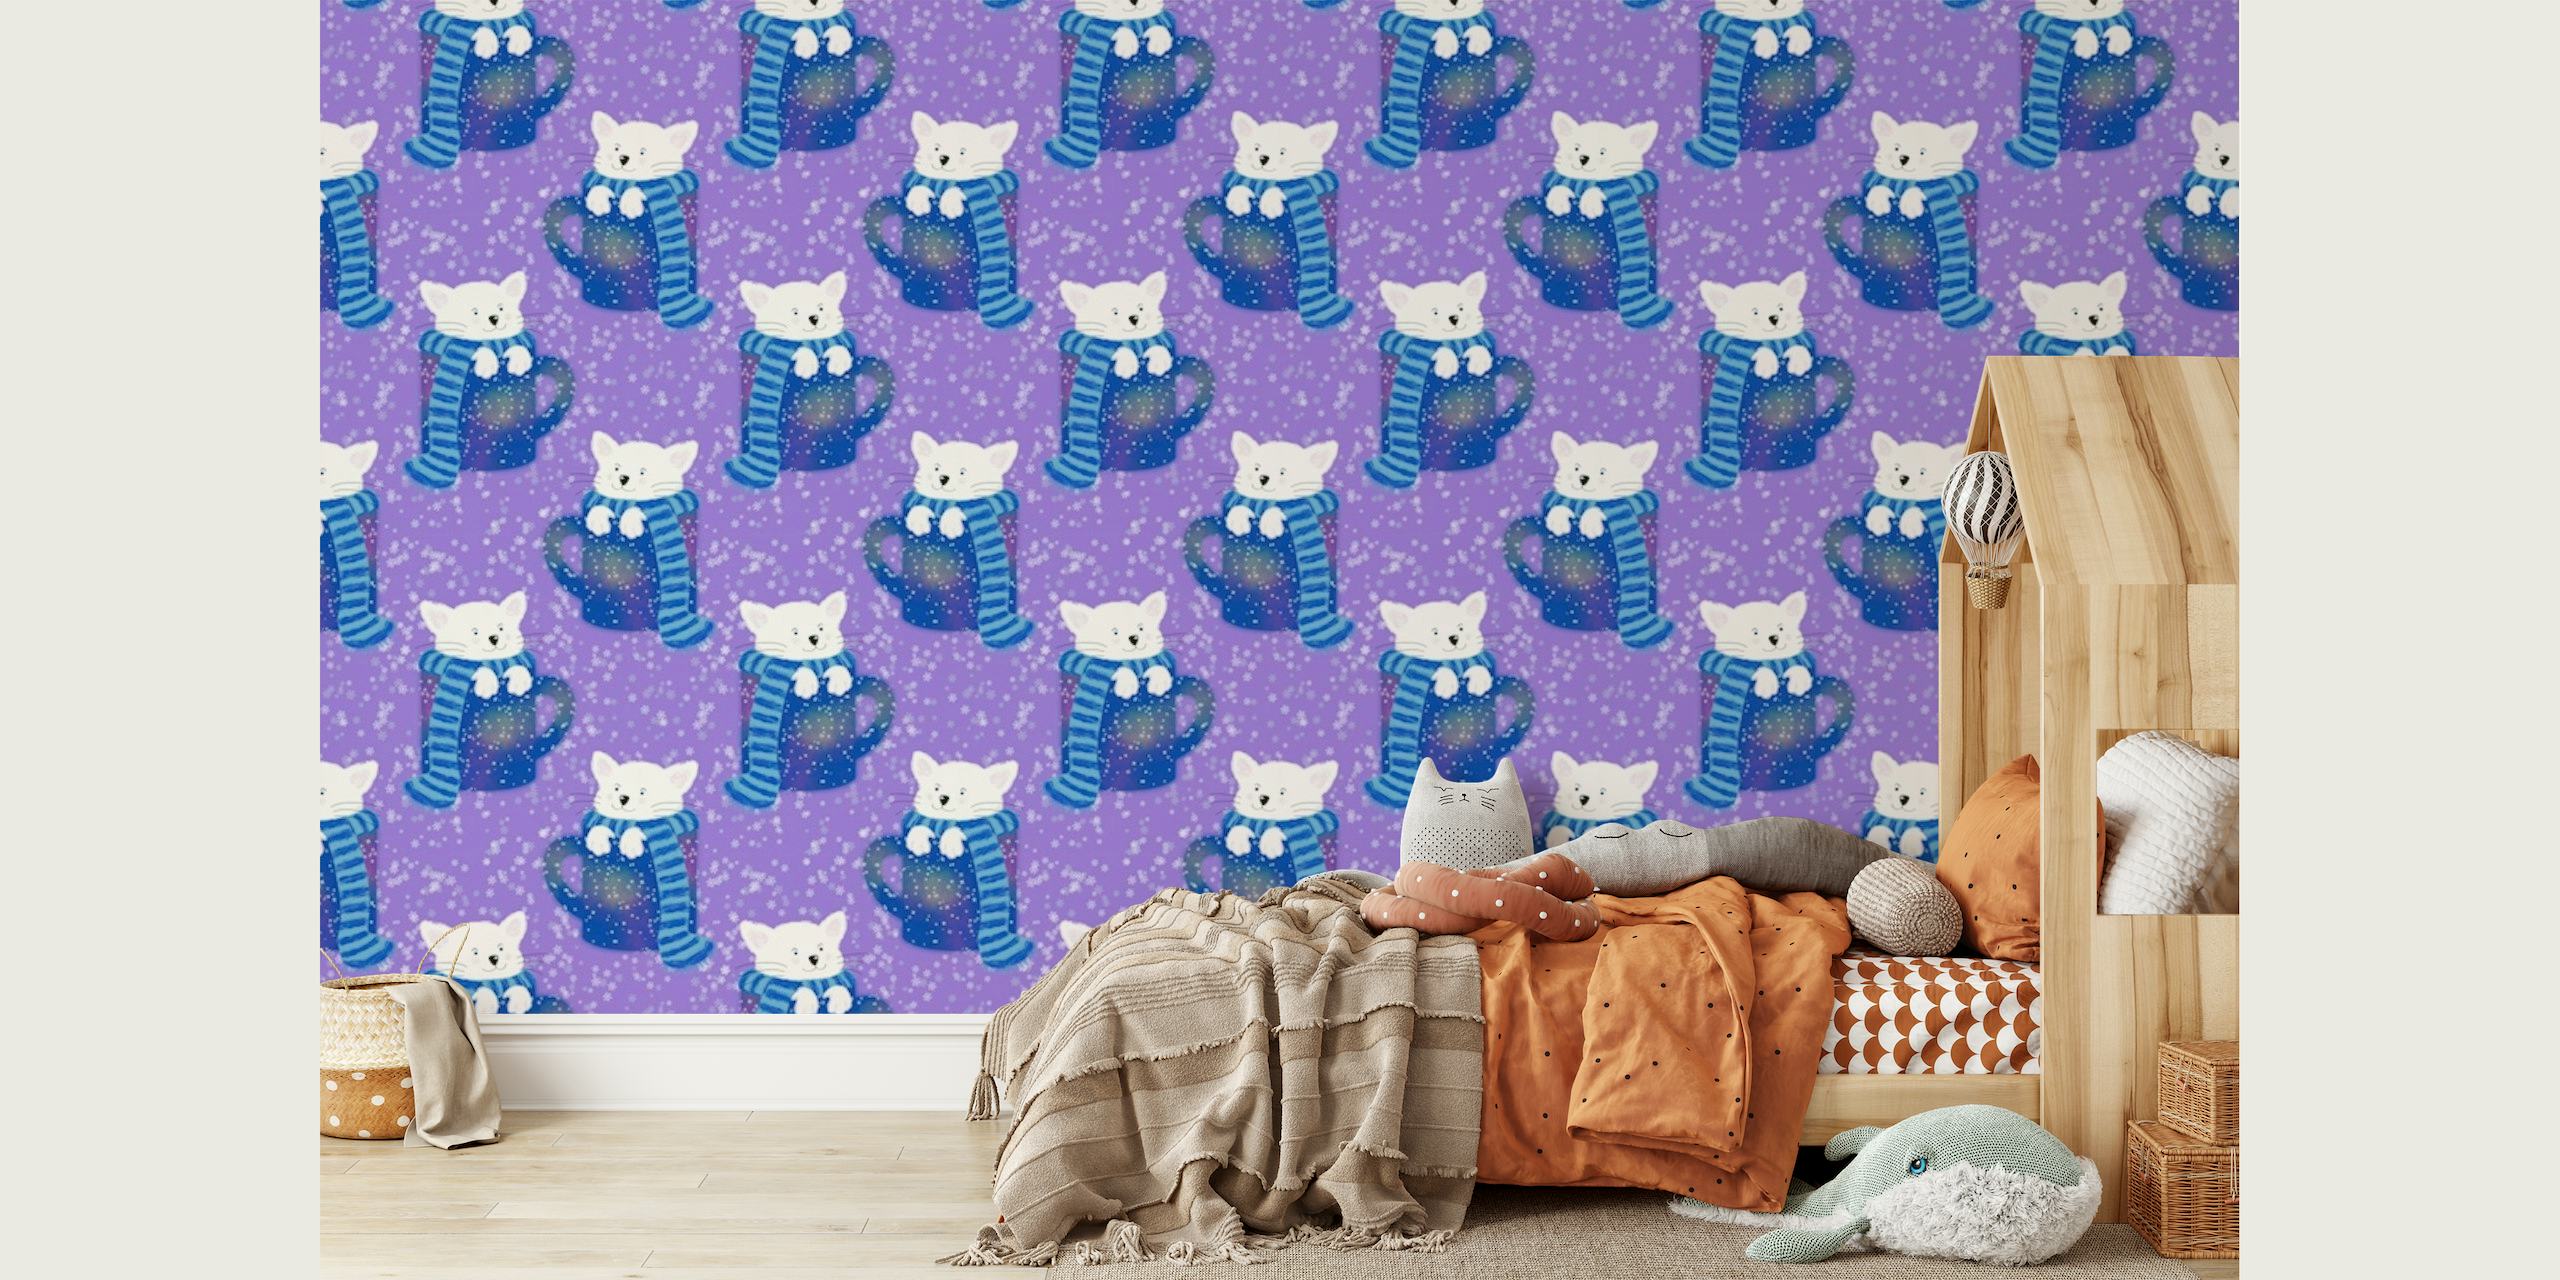 Schattige katten in theekopjespatroon op een paarse achtergrondmuurschildering